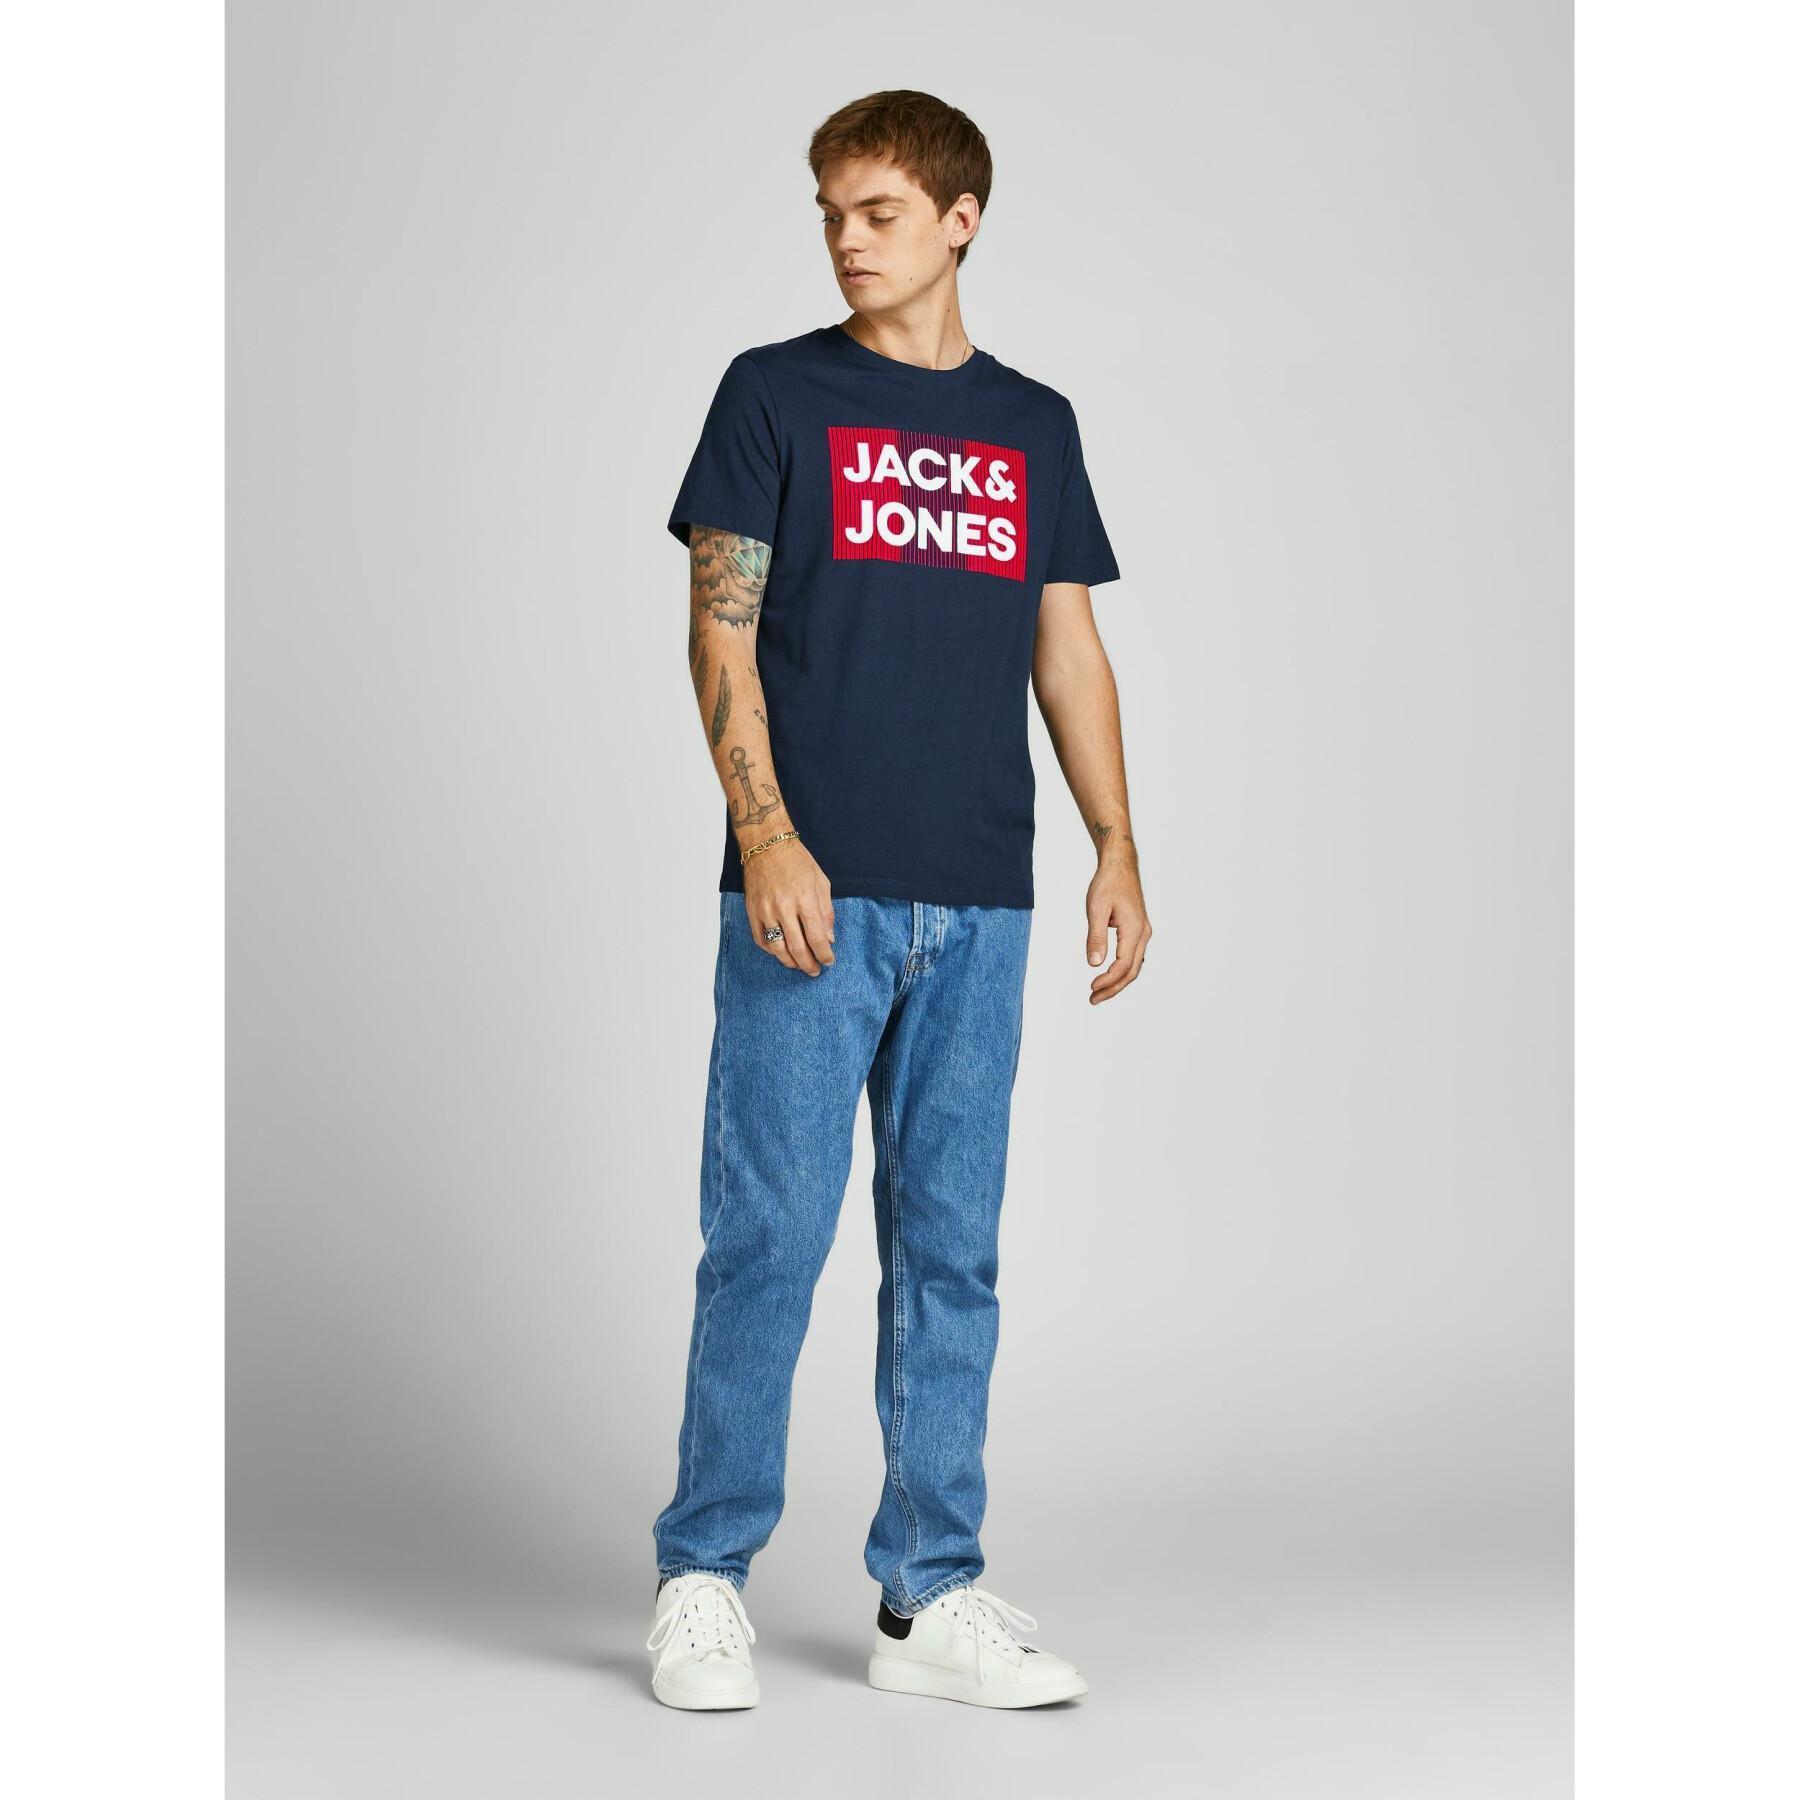 T-shirt Jack & Jones Corp o-neck